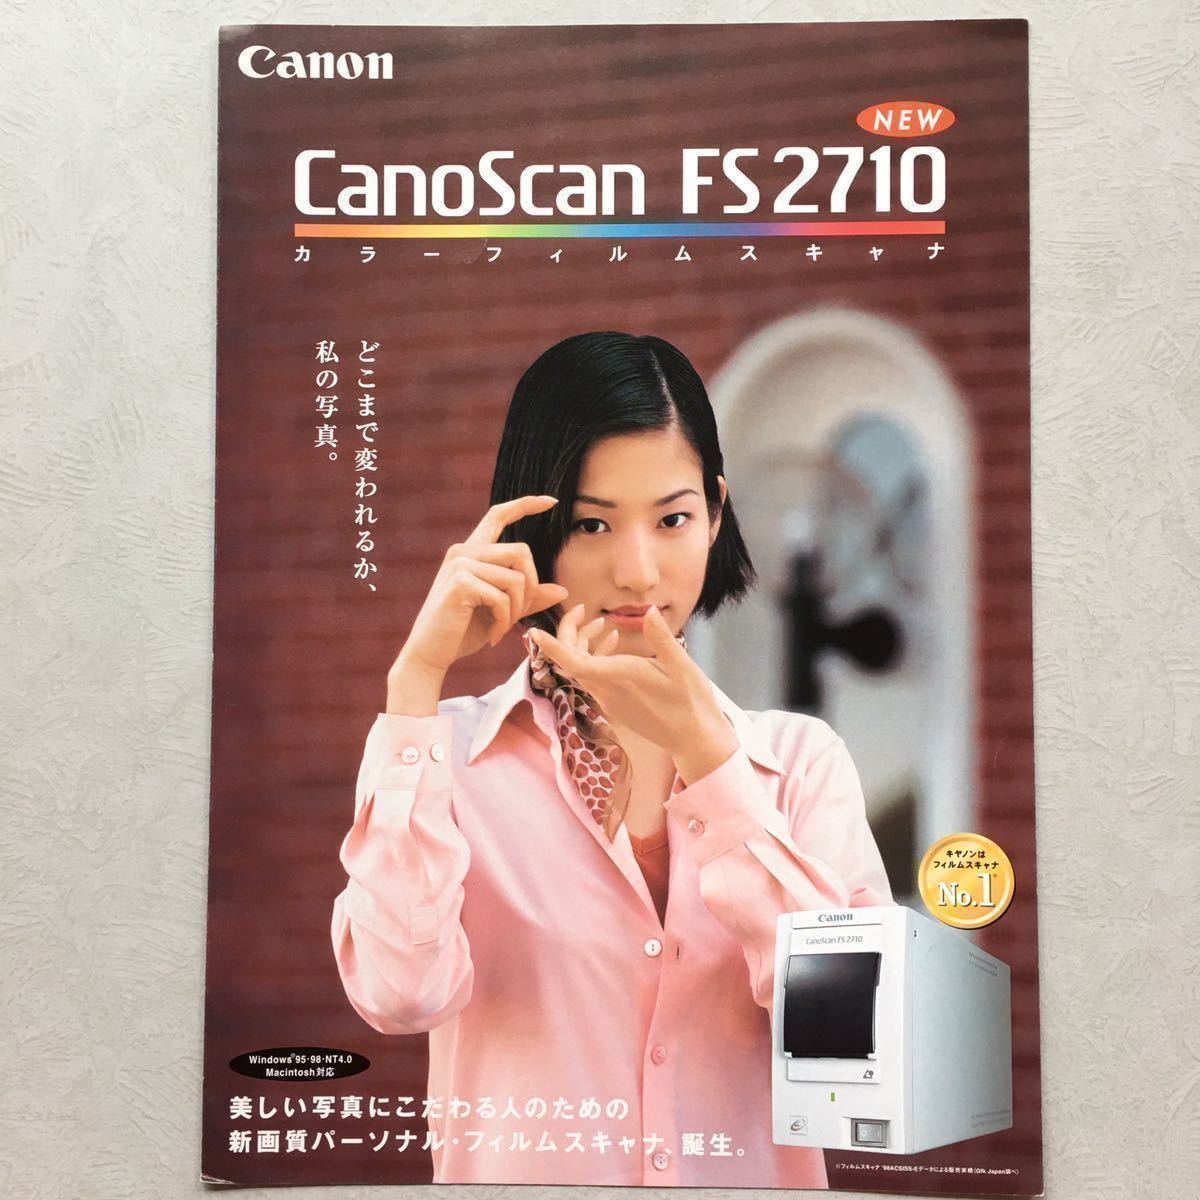  rare catalog personal film scan Canon Canon CanoScan FS2710 color film scanner Sato . raw 